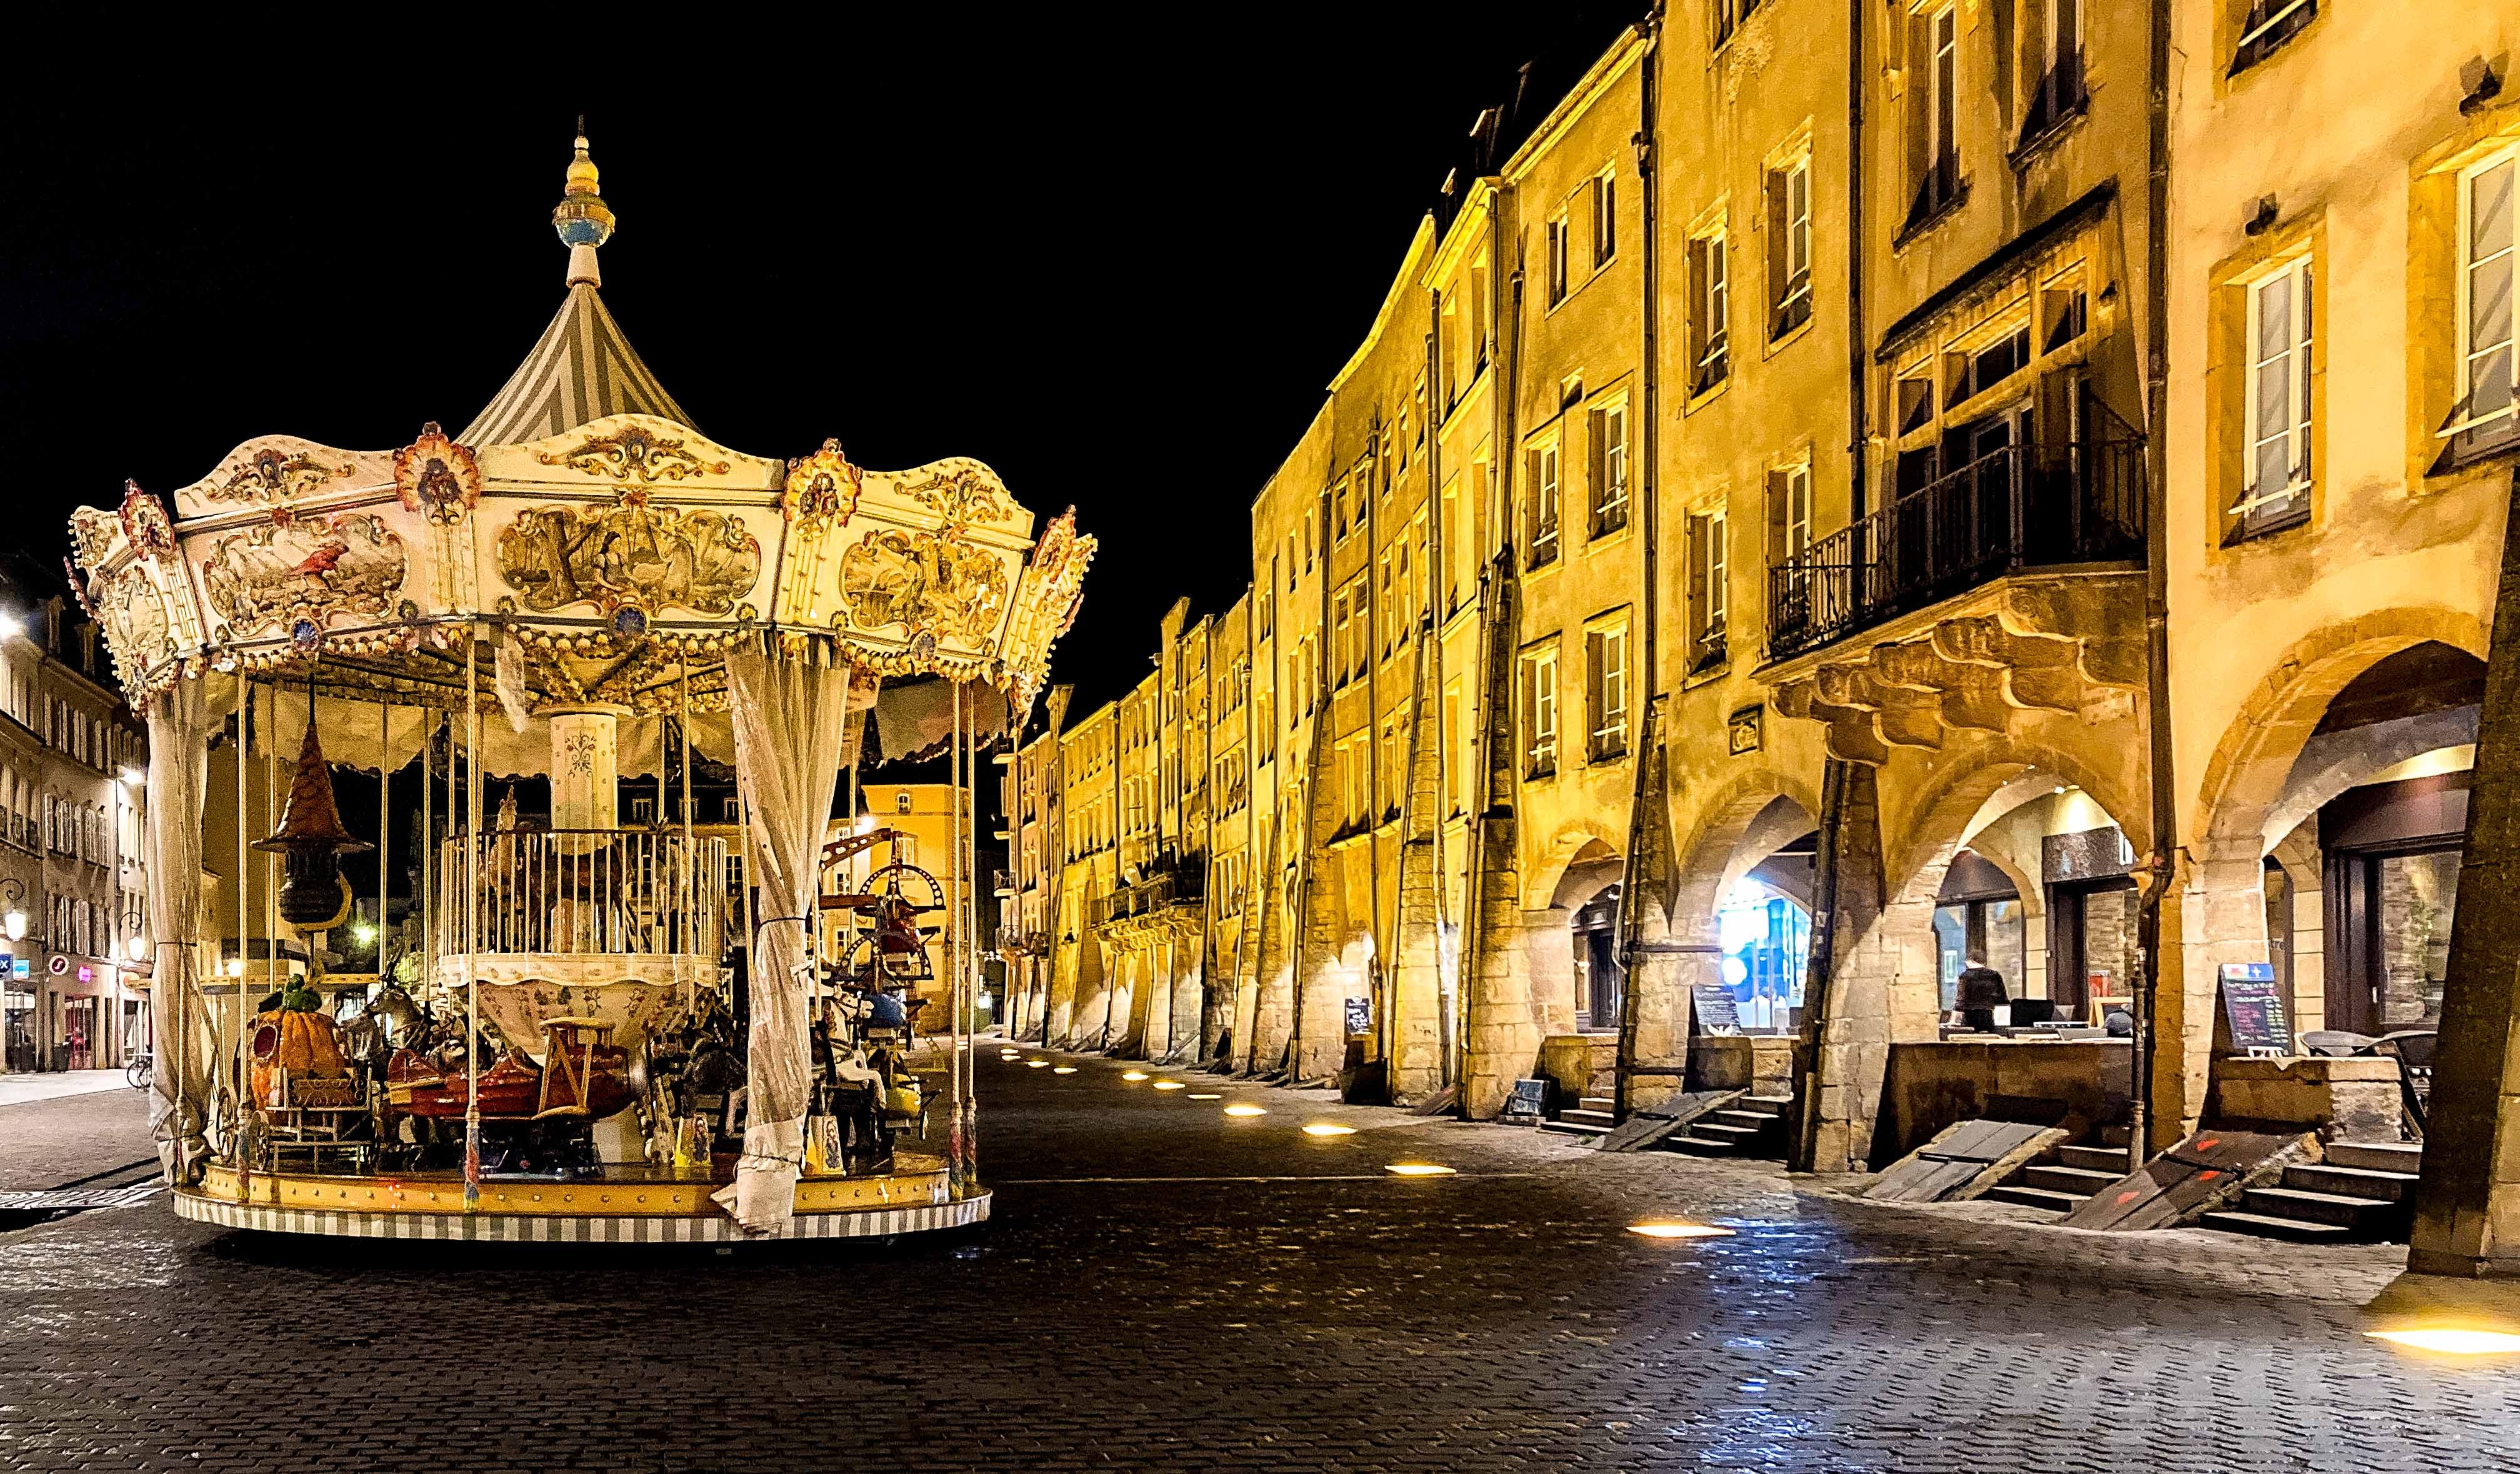 Le carrousel, Place Saint Louis, Metz, France